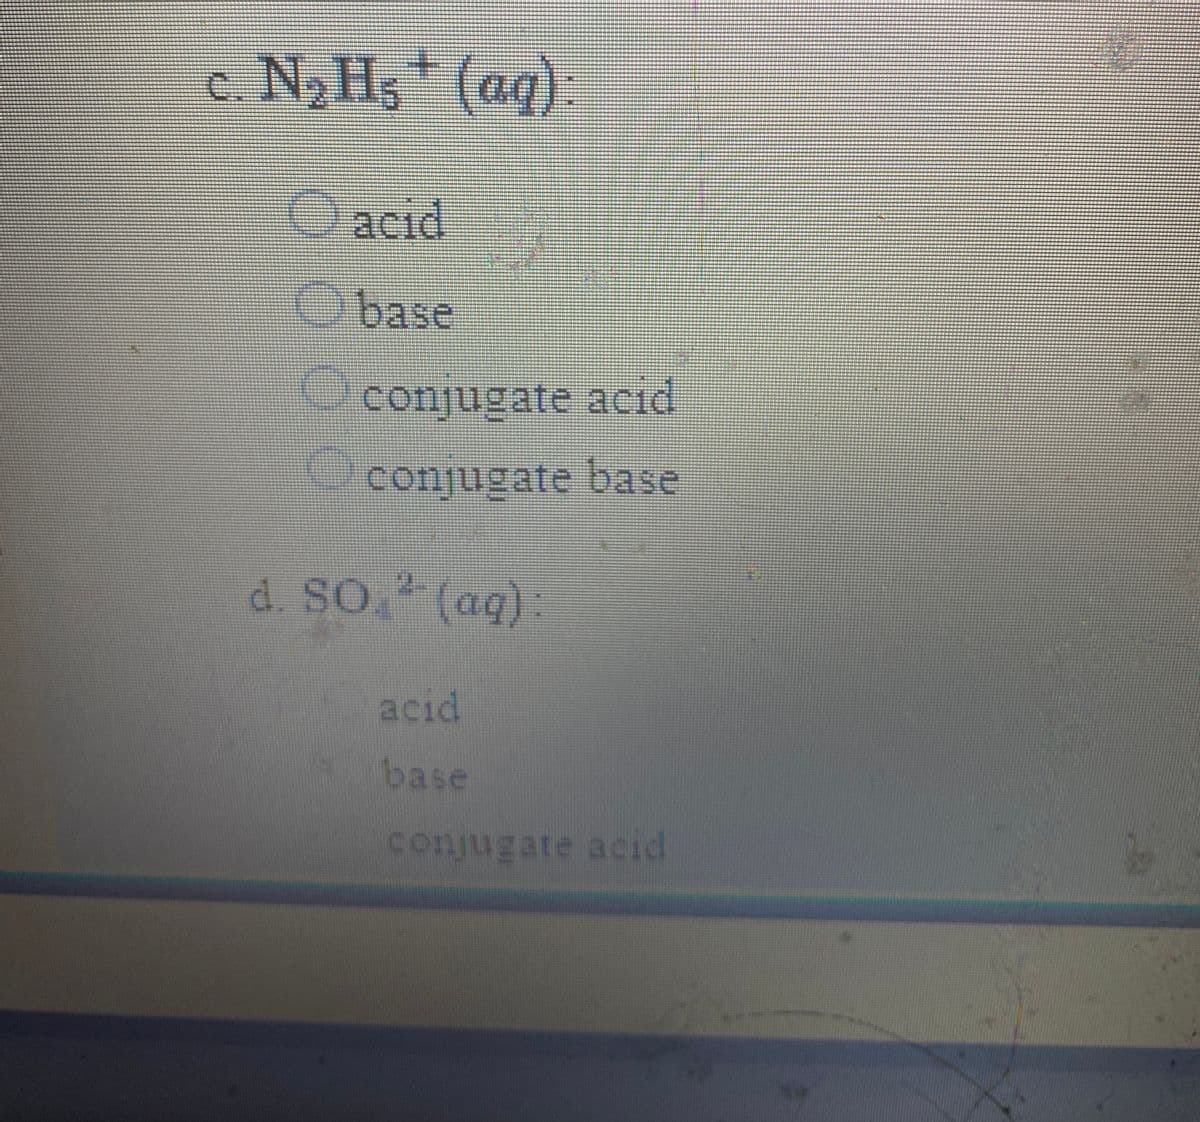 c. N2 Hs (aq):
(ag):
acid
Obase
conjugate acid
conjugate base
d. So. (aq)
acıd
base
conjugate acid
